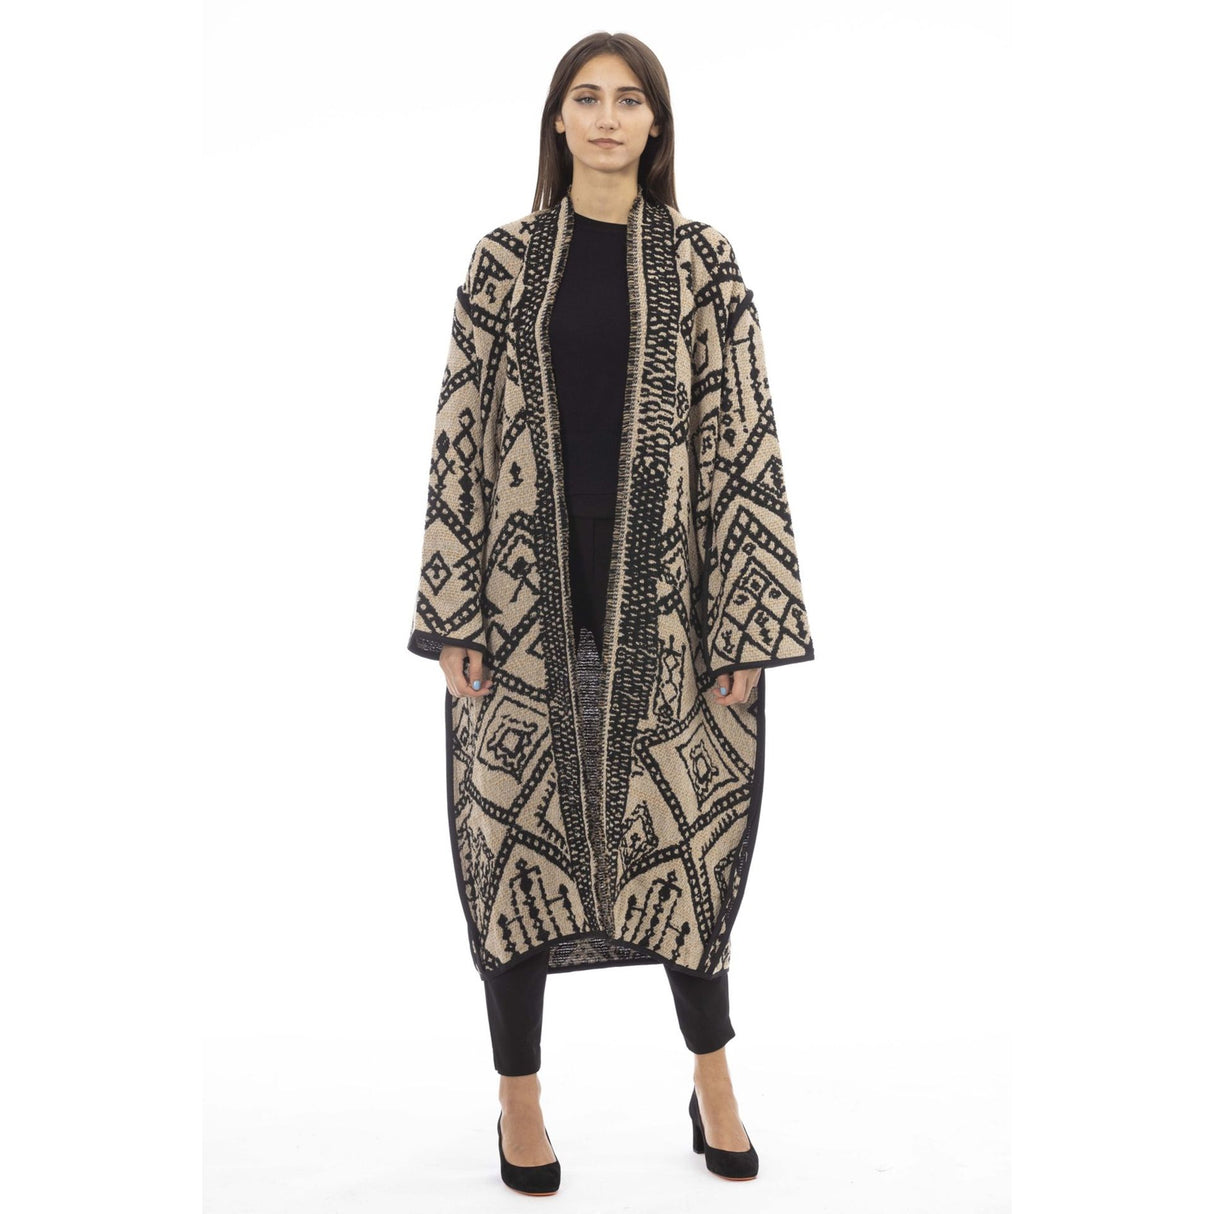 Women's coat Textured coat Long sleeve coat Fall/Winter coat Italian-made coat Warm coat Winter coat Stylish coat Women's outerwear